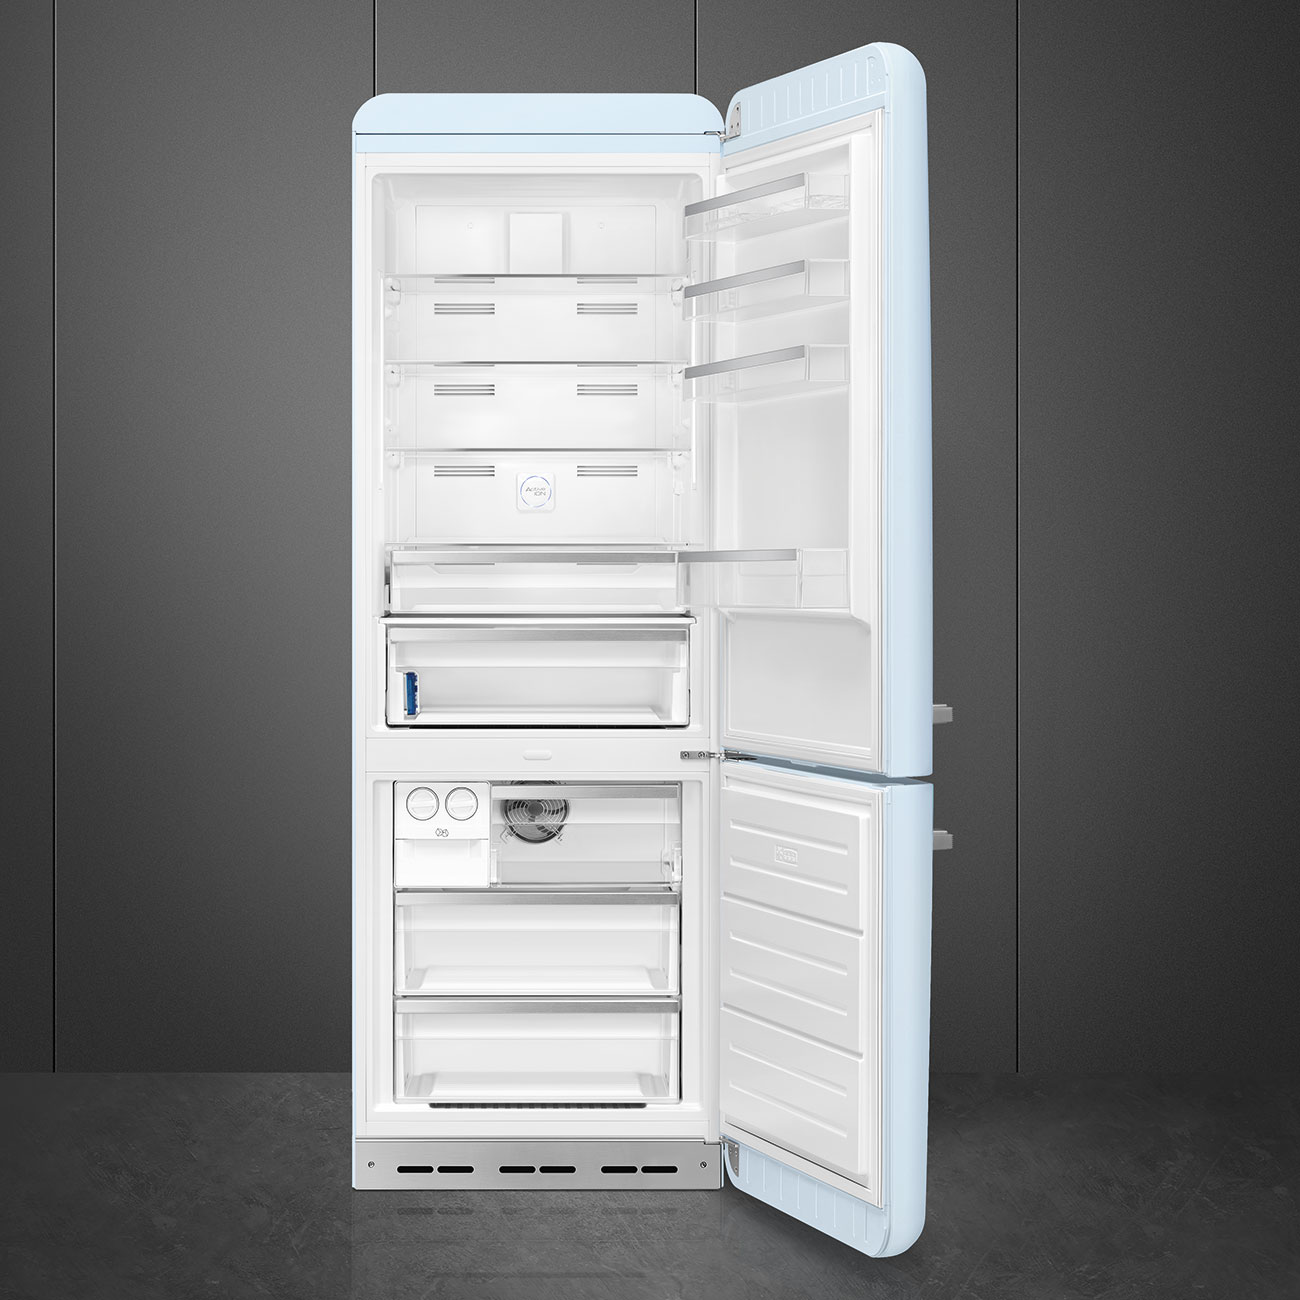 Pastellblau Retro-Kühlschränke von Smeg_2